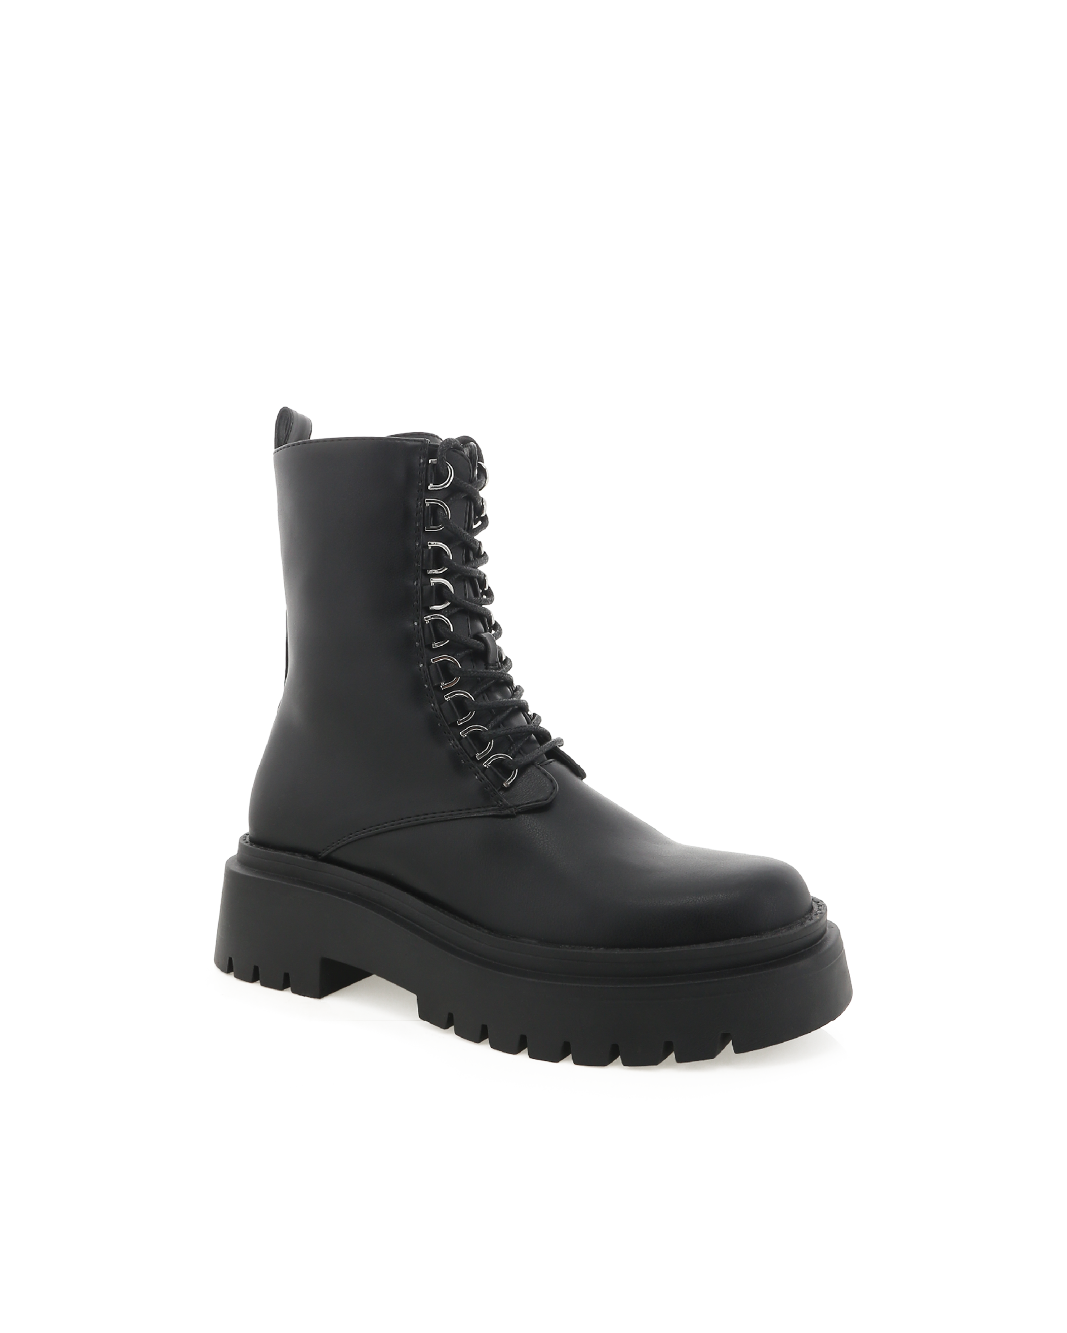 FRANCES - BLACK-Boots-Billini-BILLINI USA